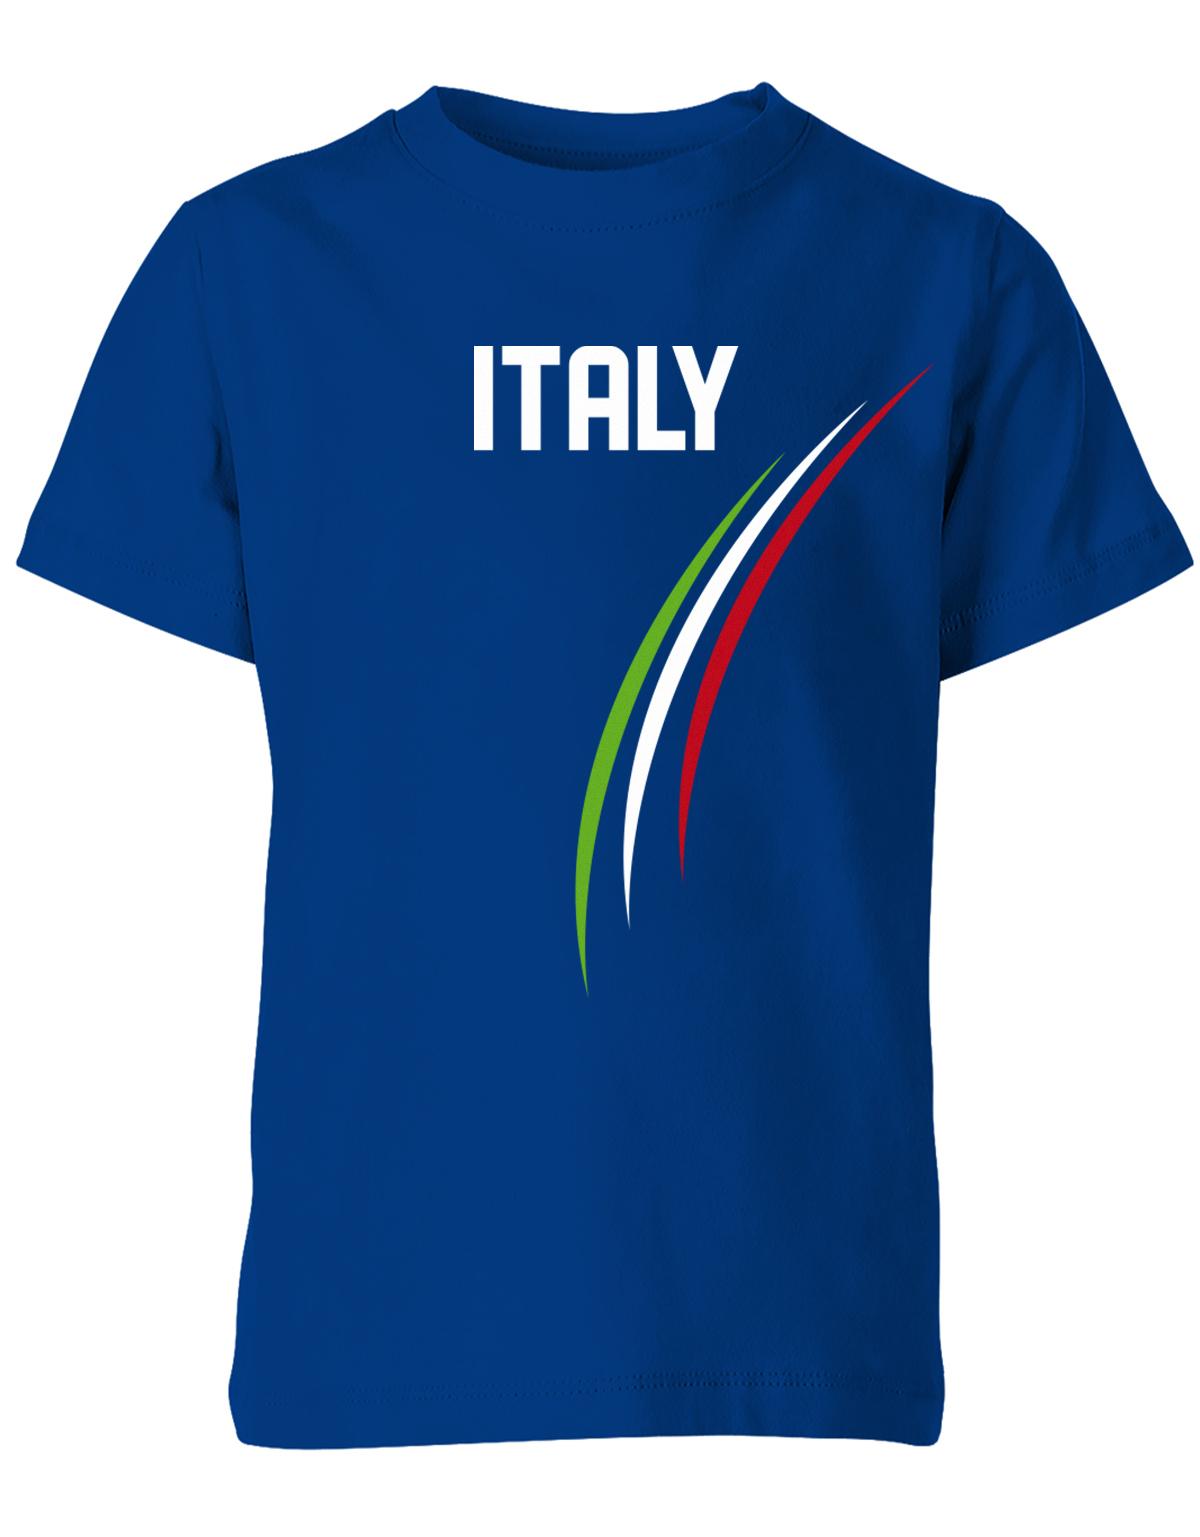 Italy-Kinder-Shirt-Royalblau